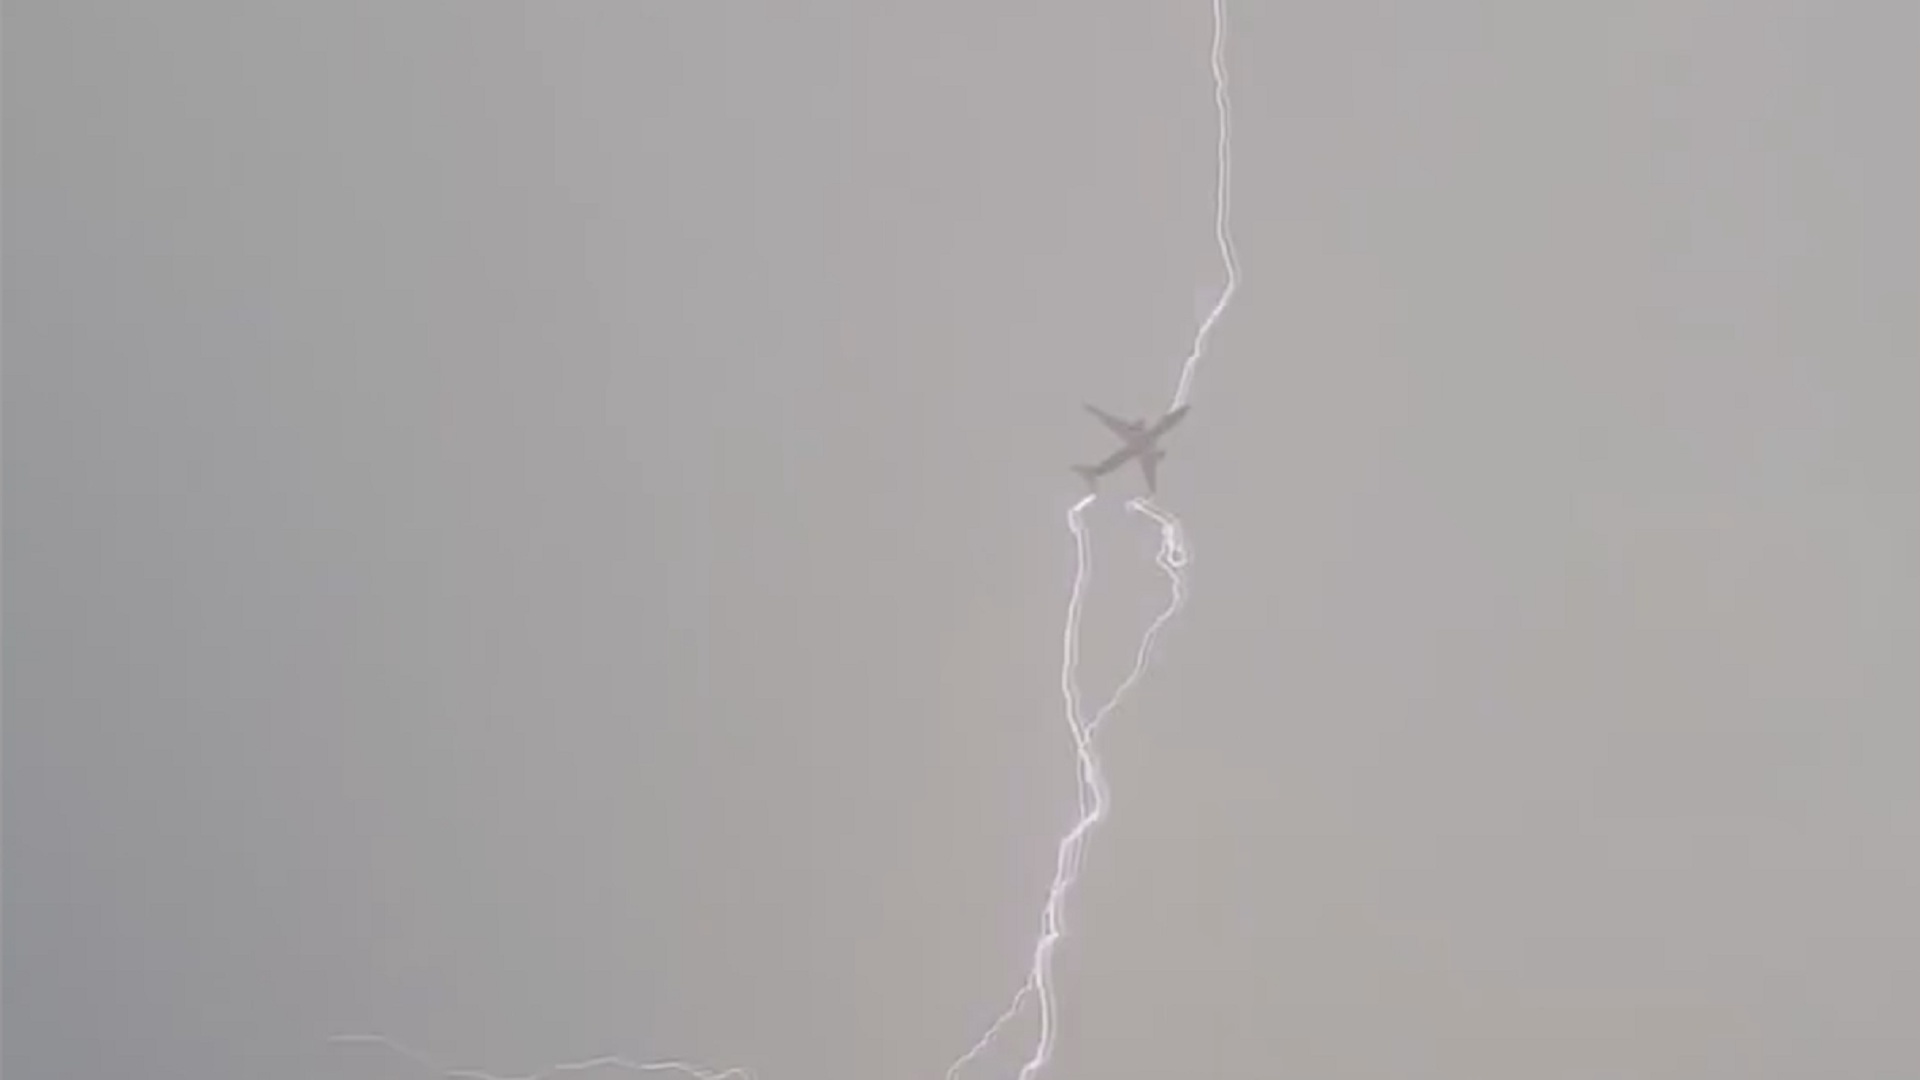 Молния снизу вверх. Удар молнии в самолет. Молния попала в самолет. Смалета ударила молния. Попадание молнии в самолет.